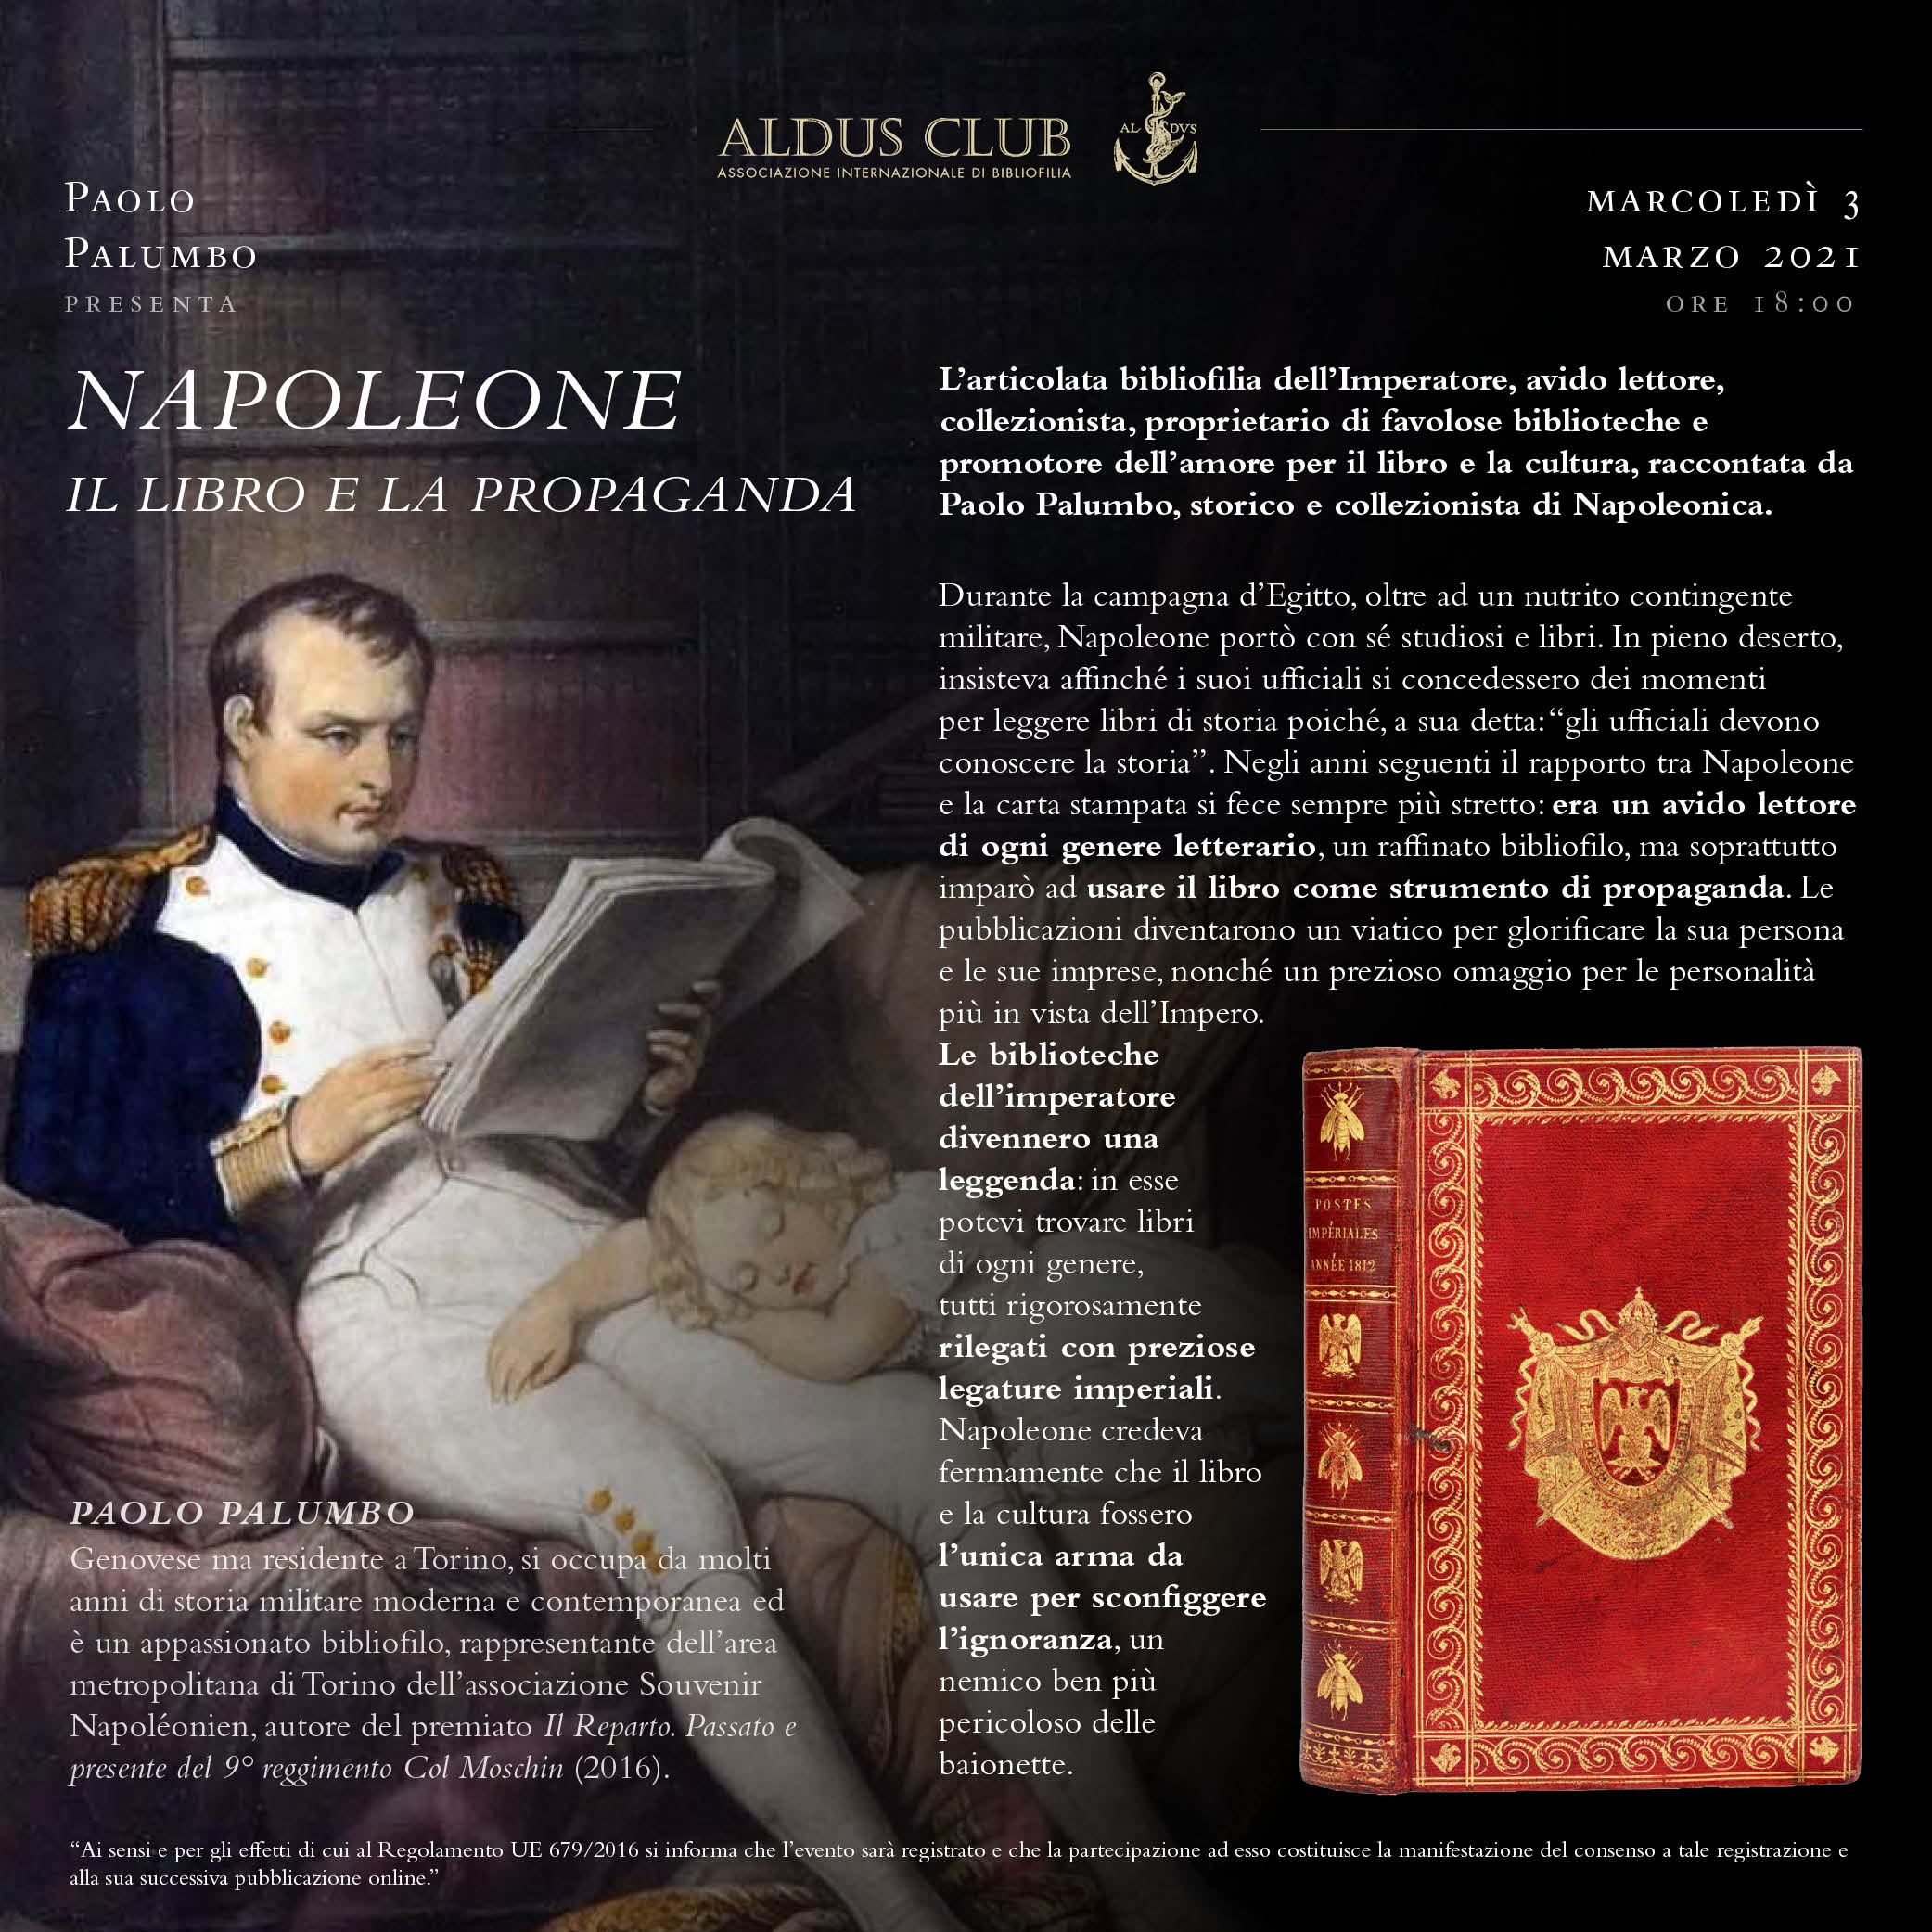 Napoleone: Il libro e la propaganda